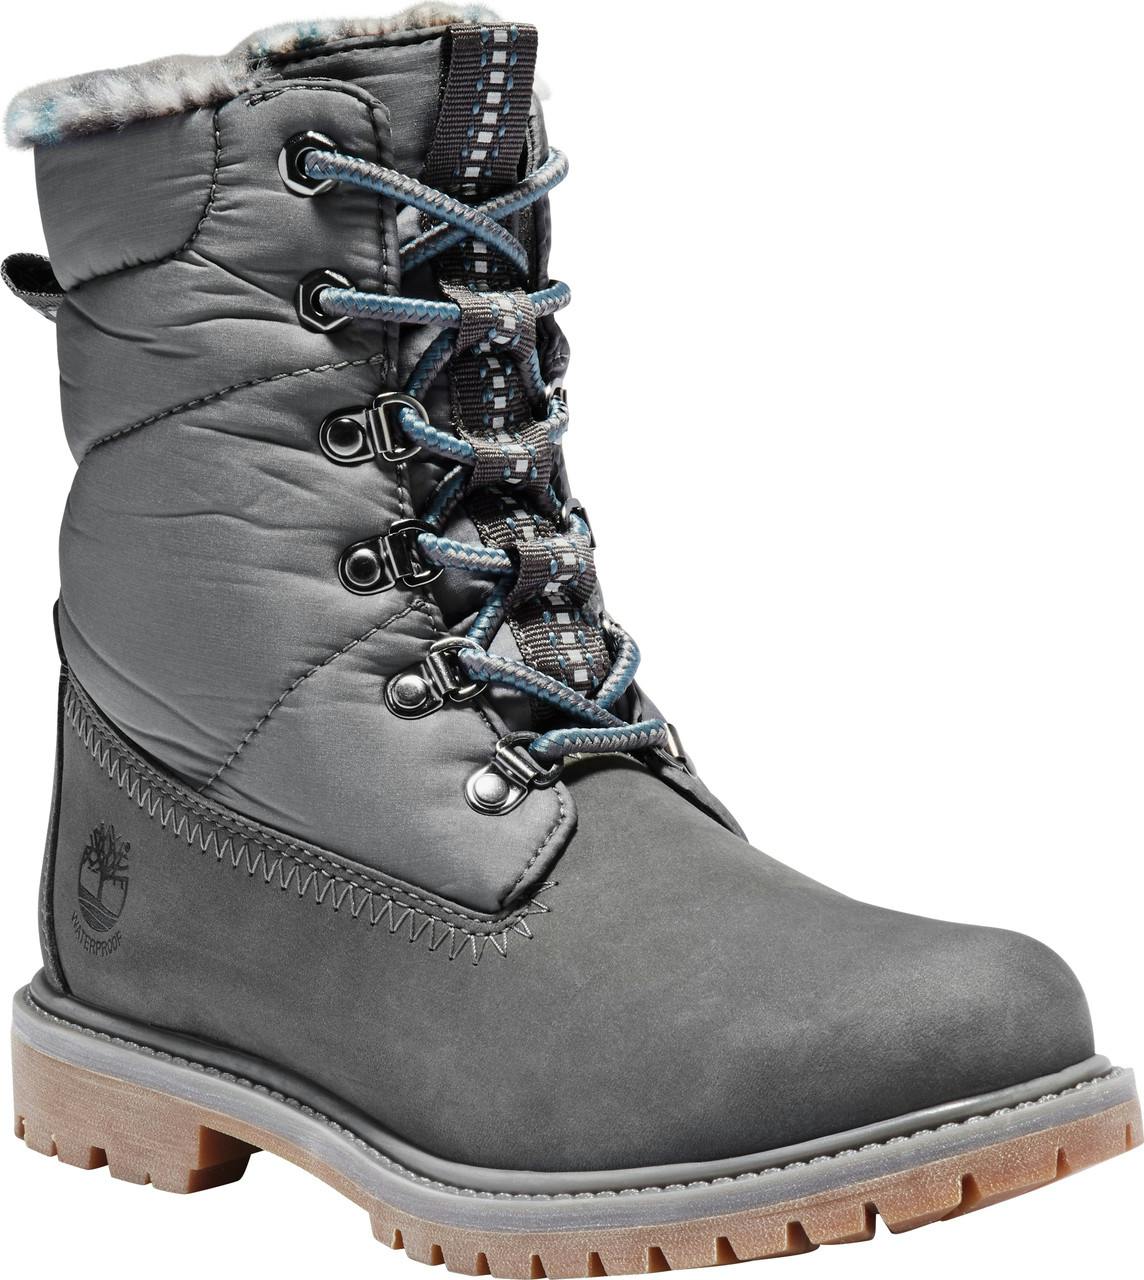 Premium Waterproof Winter Boots Dark Grey Nubuck